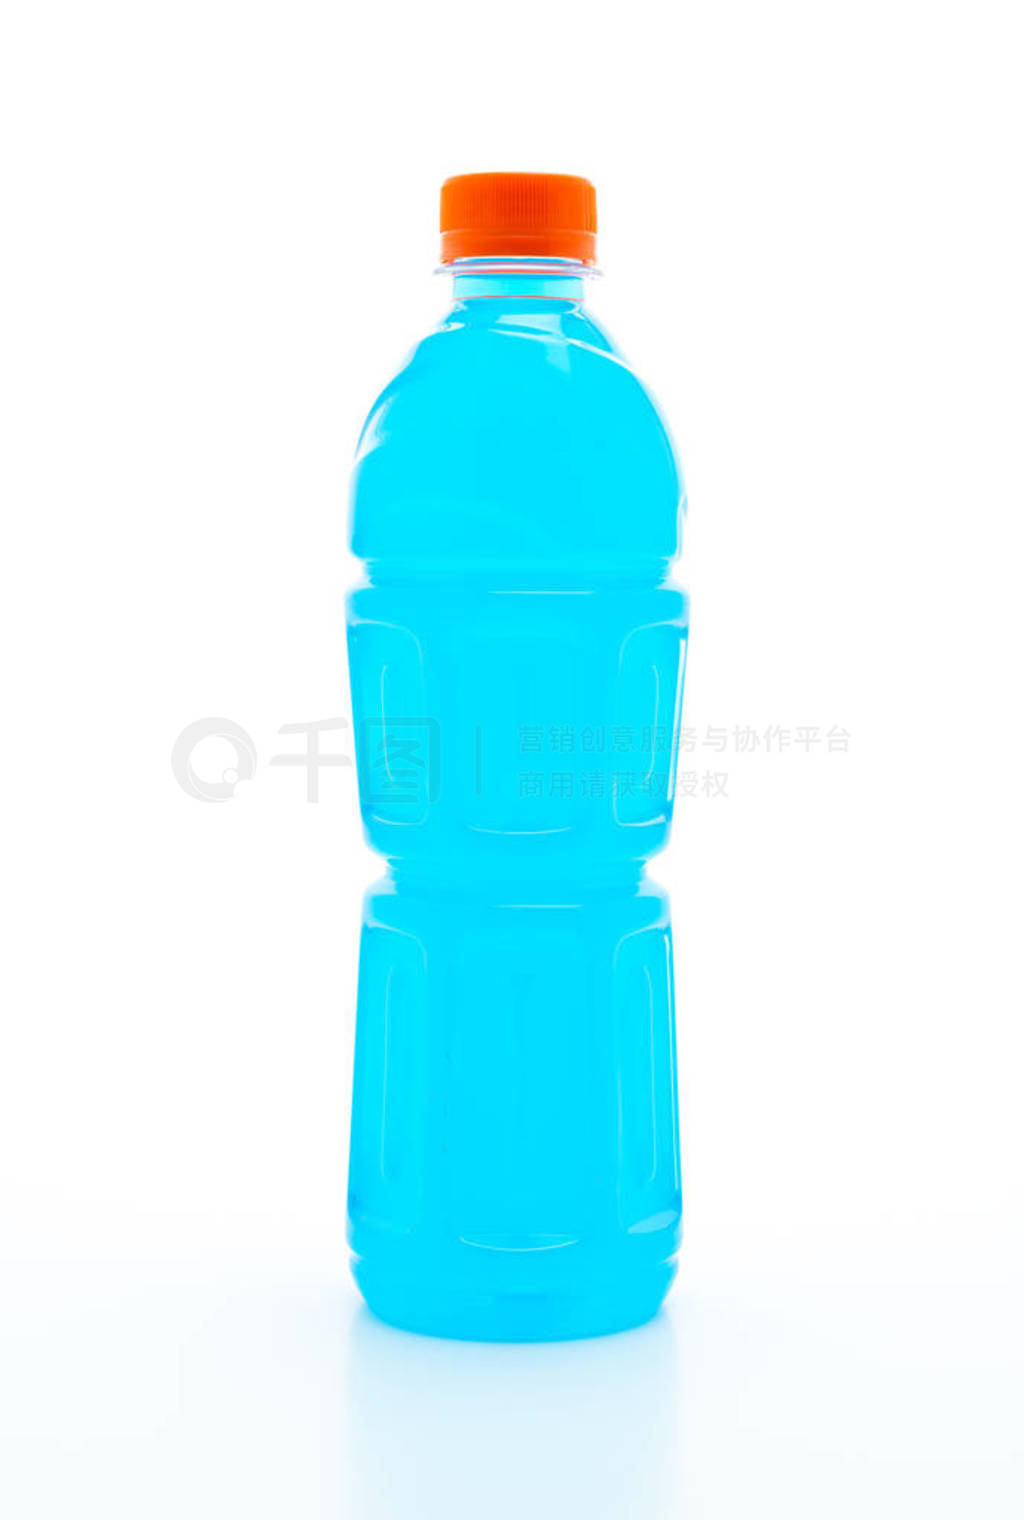 Electrolyte drink bottle